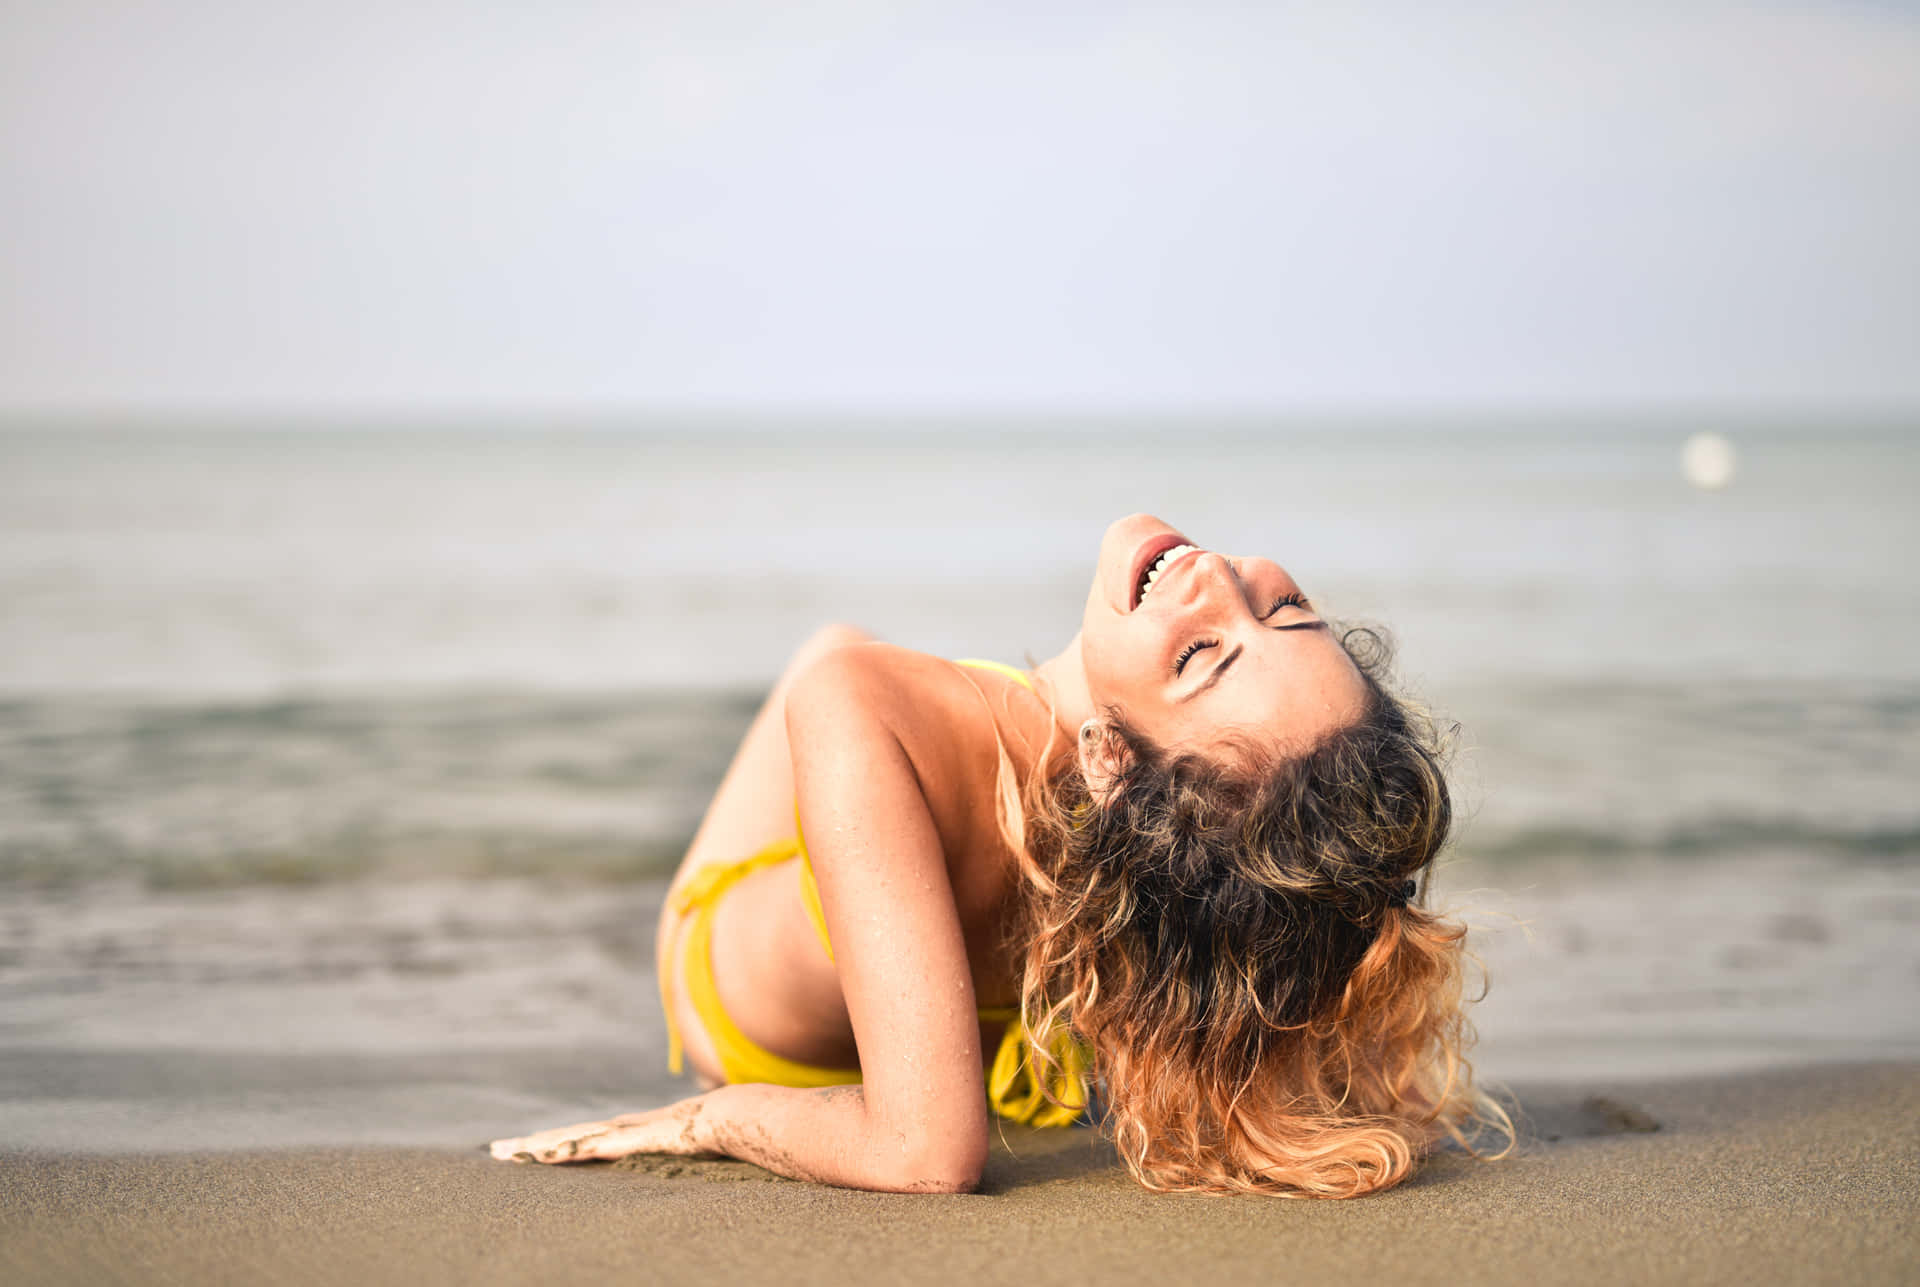 Enkvinde I En Gul Bikini Ligger På Stranden